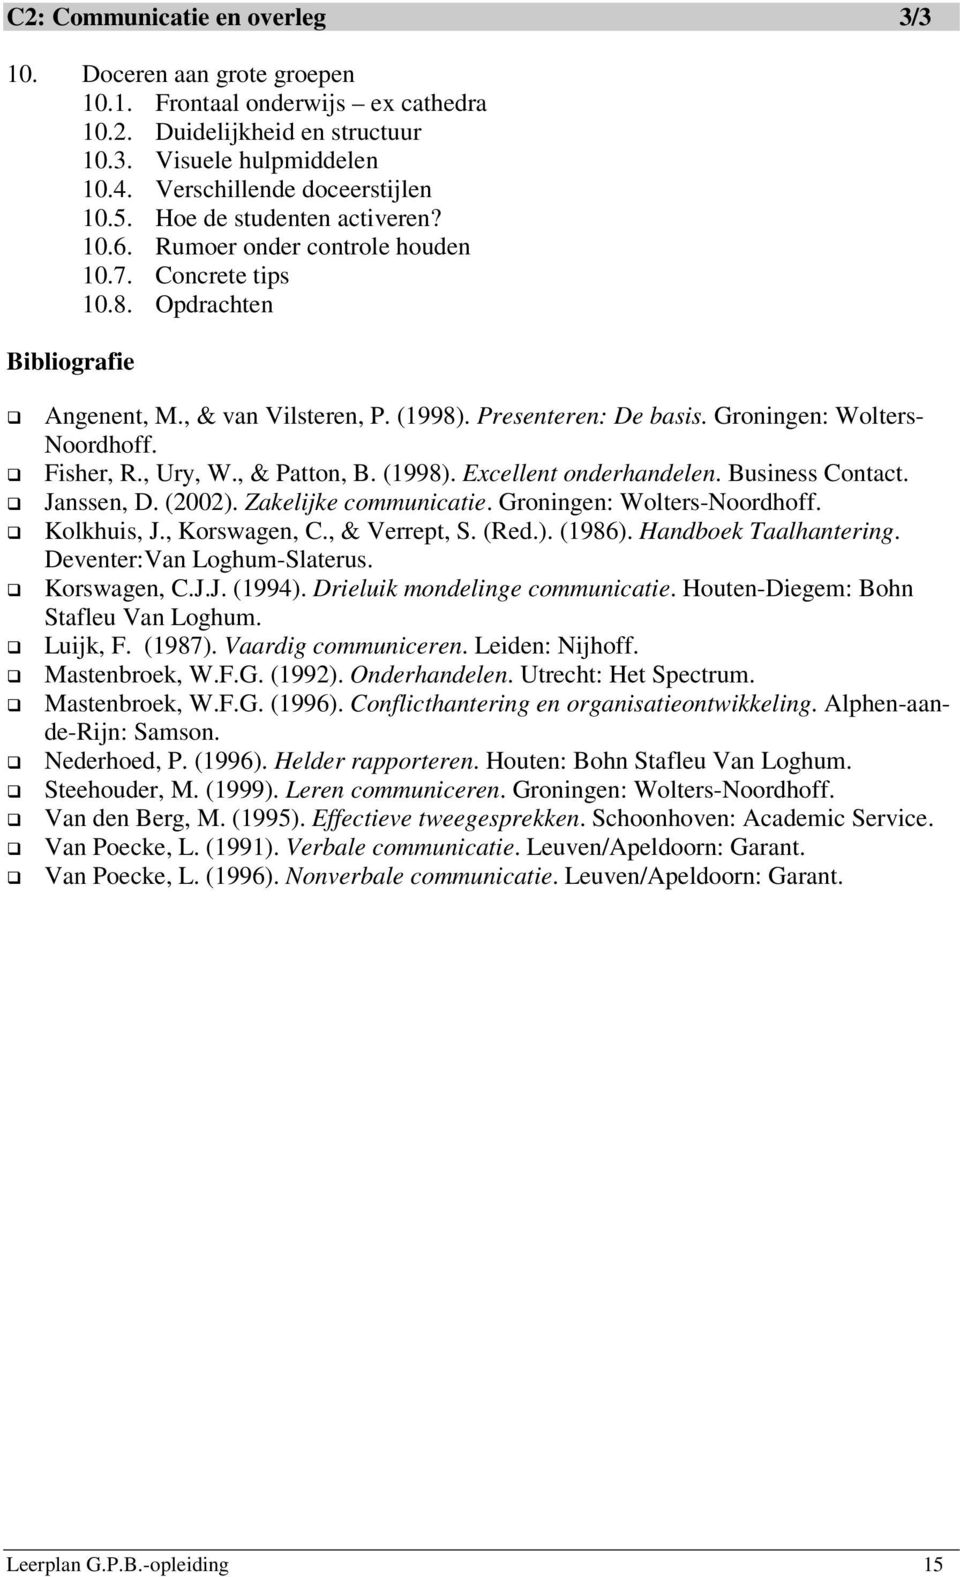 Groningen: Wolters- Noordhoff. Fisher, R., Ury, W., & Patton, B. (1998). Excellent onderhandelen. Business Contact. Janssen, D. (2002). Zakelijke communicatie. Groningen: Wolters-Noordhoff.